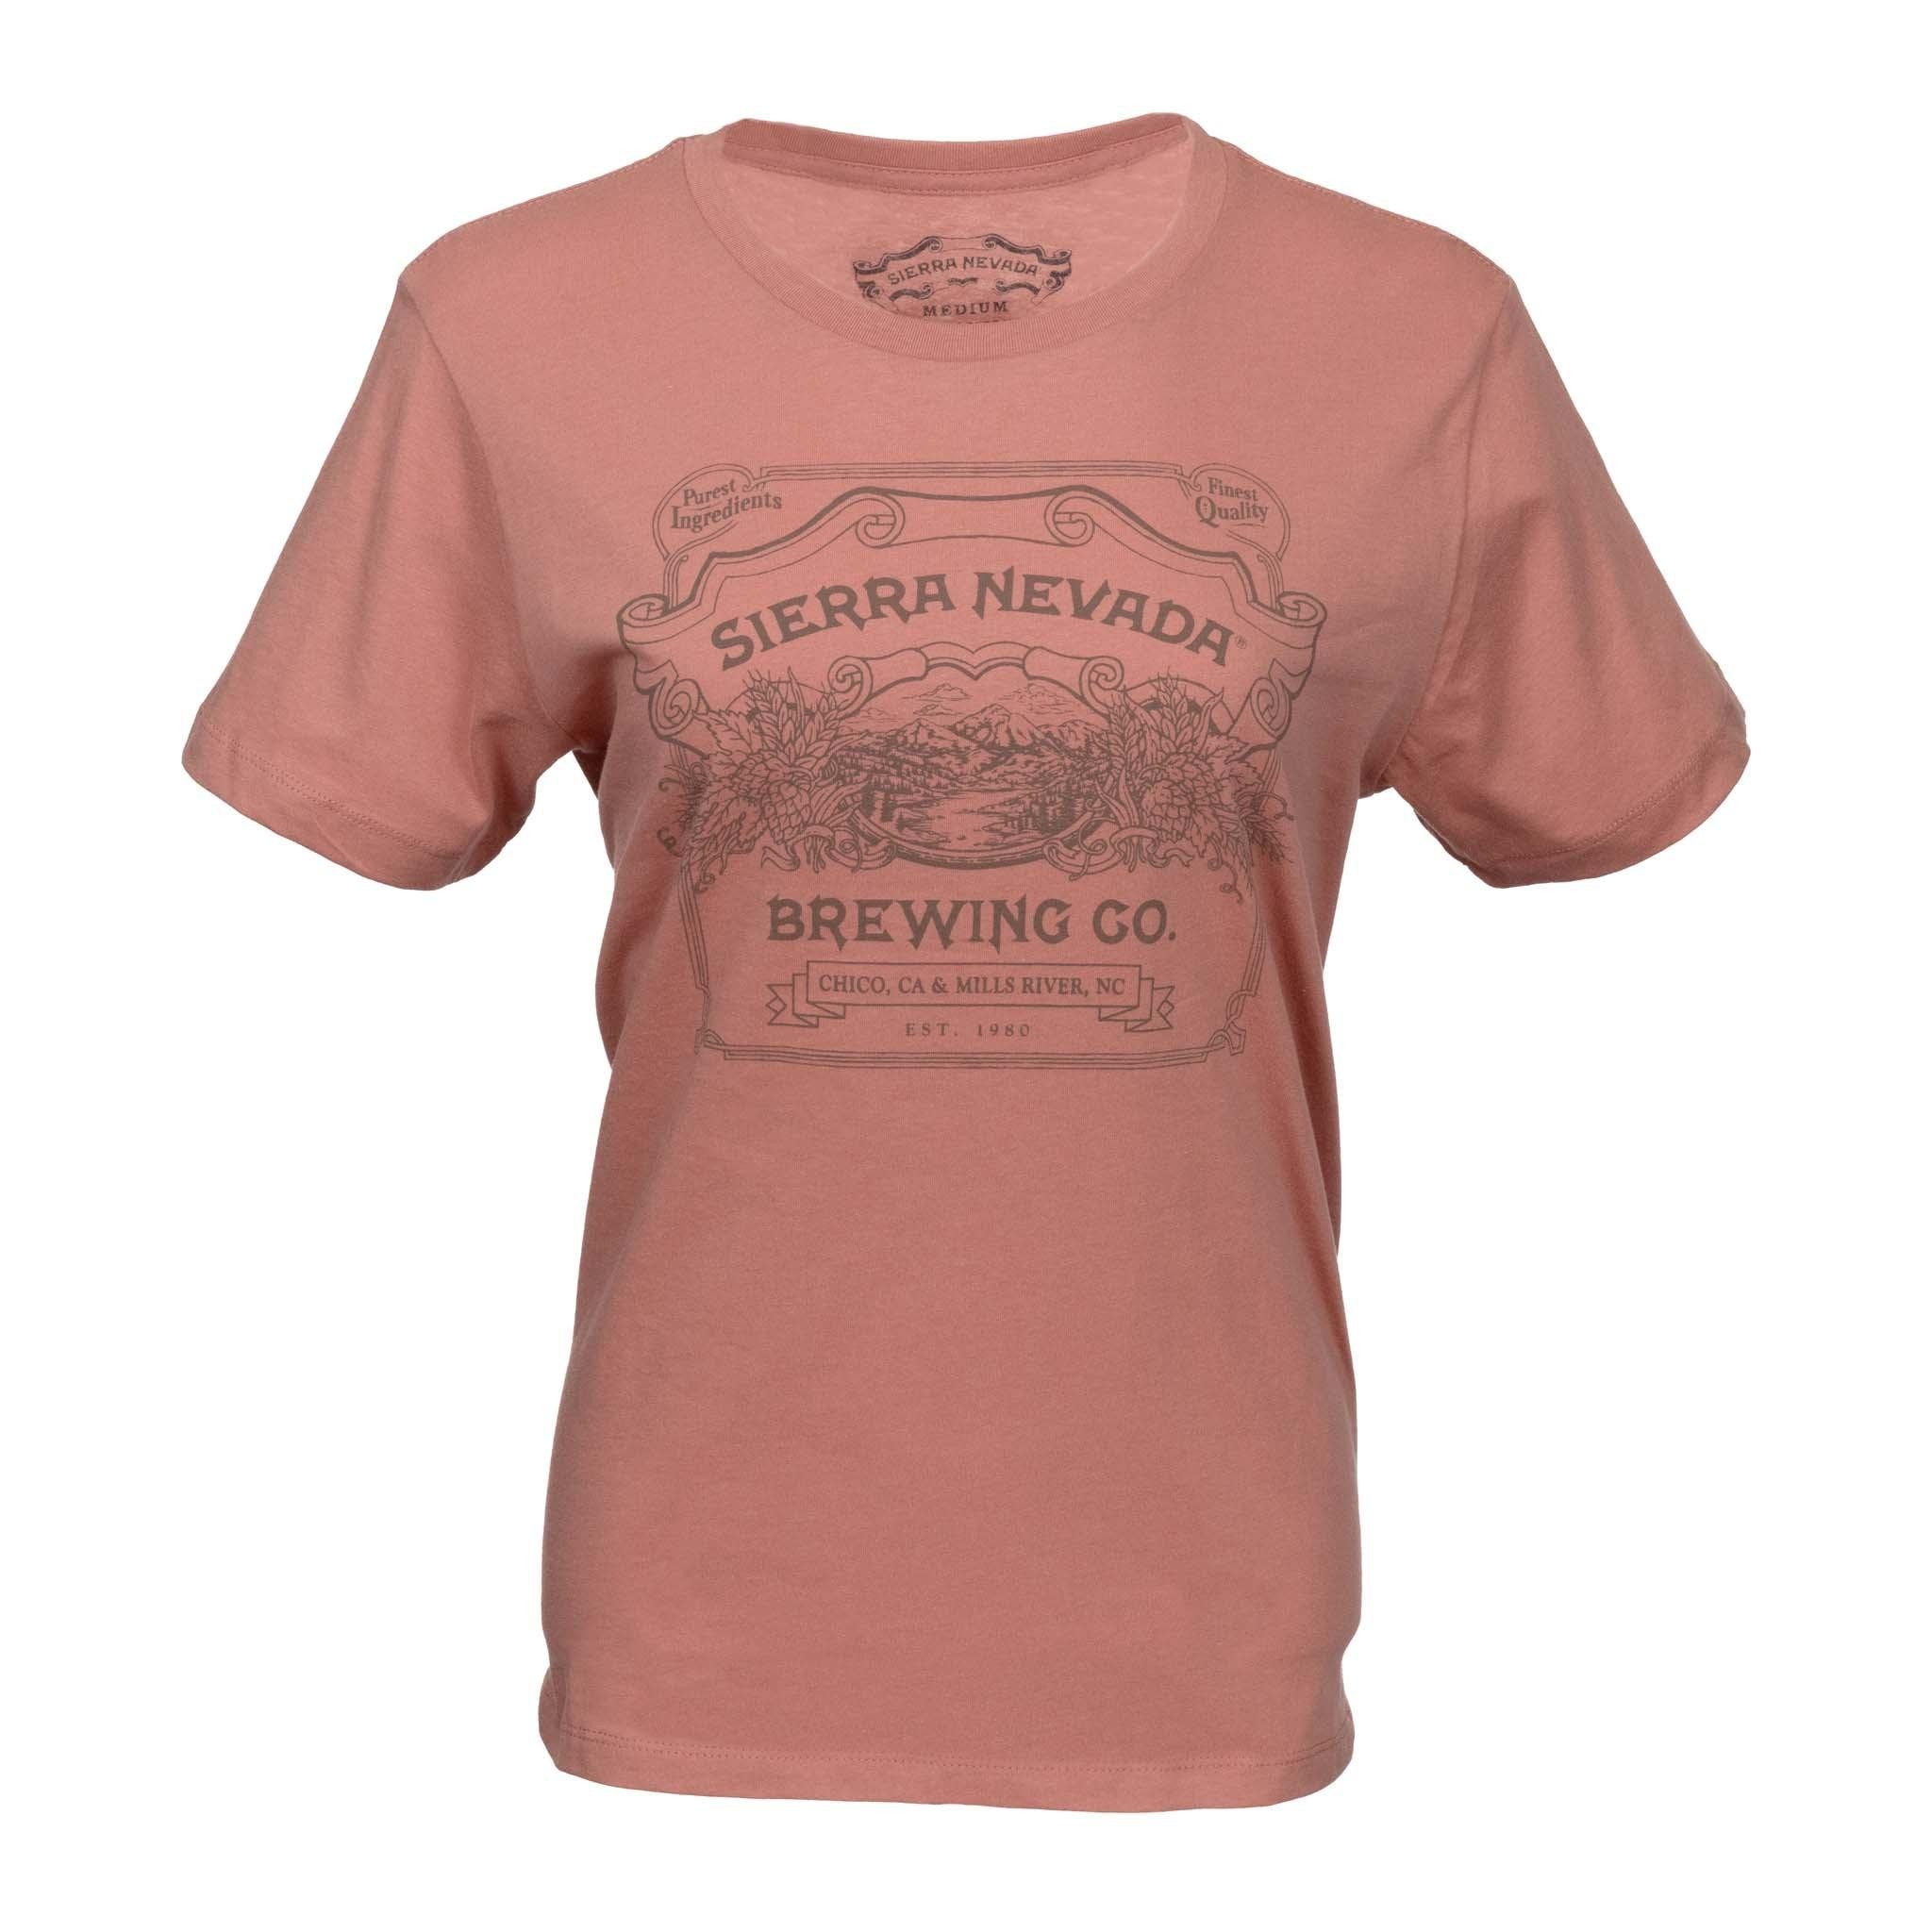 Handcrafted Short Sleeve T-Shirt Desert Pink Women's - S